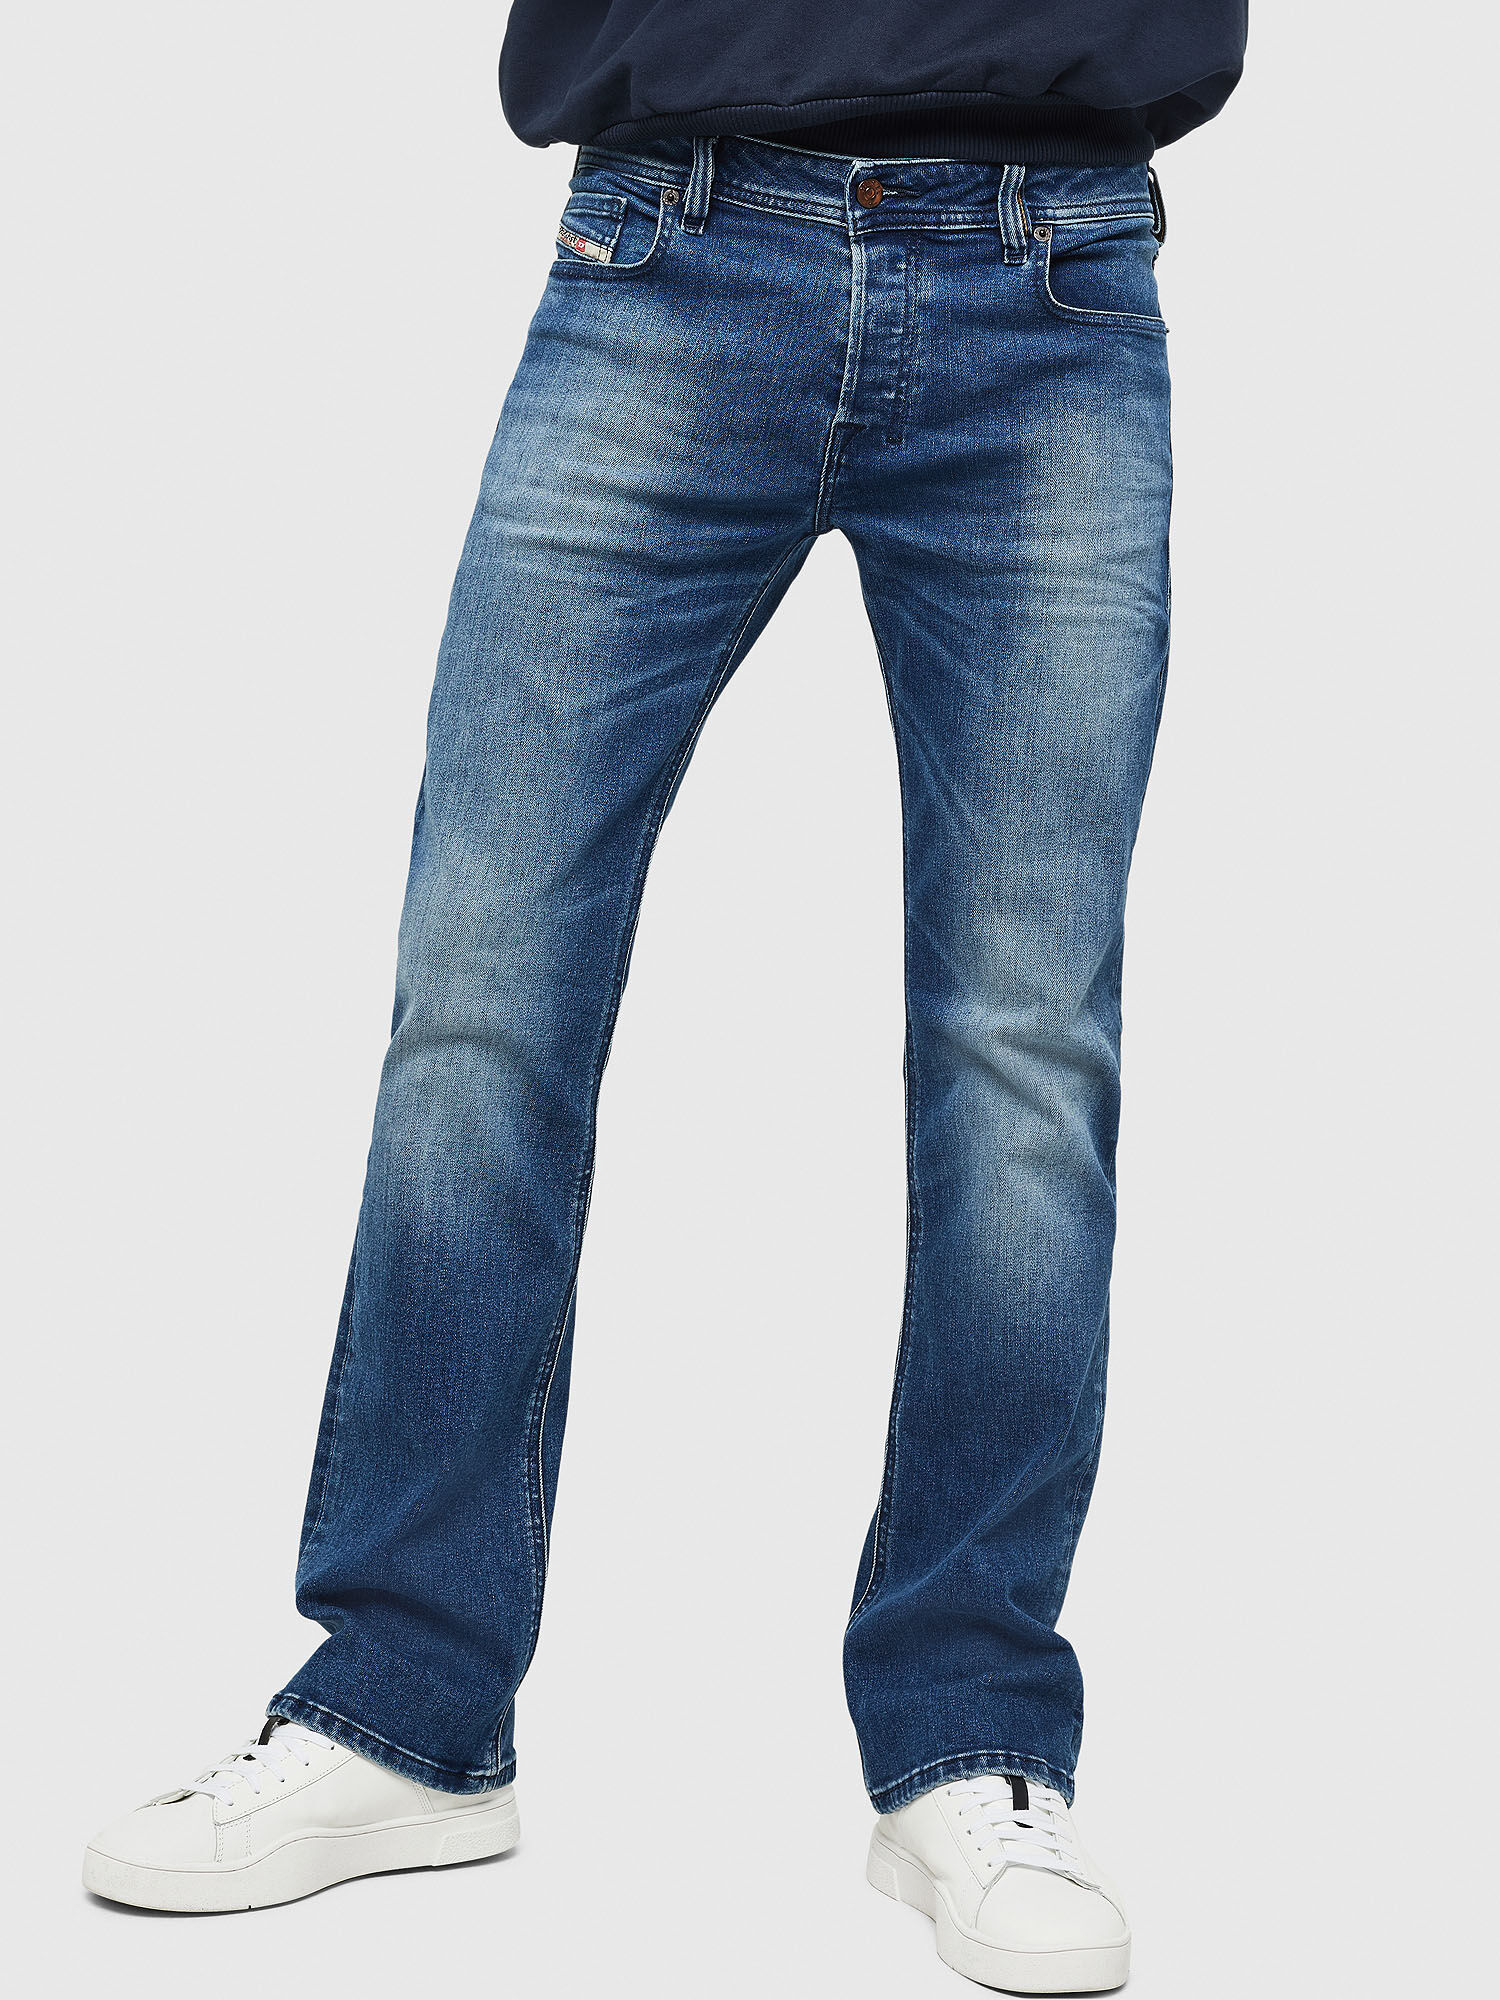 arizona jeans cargo shorts